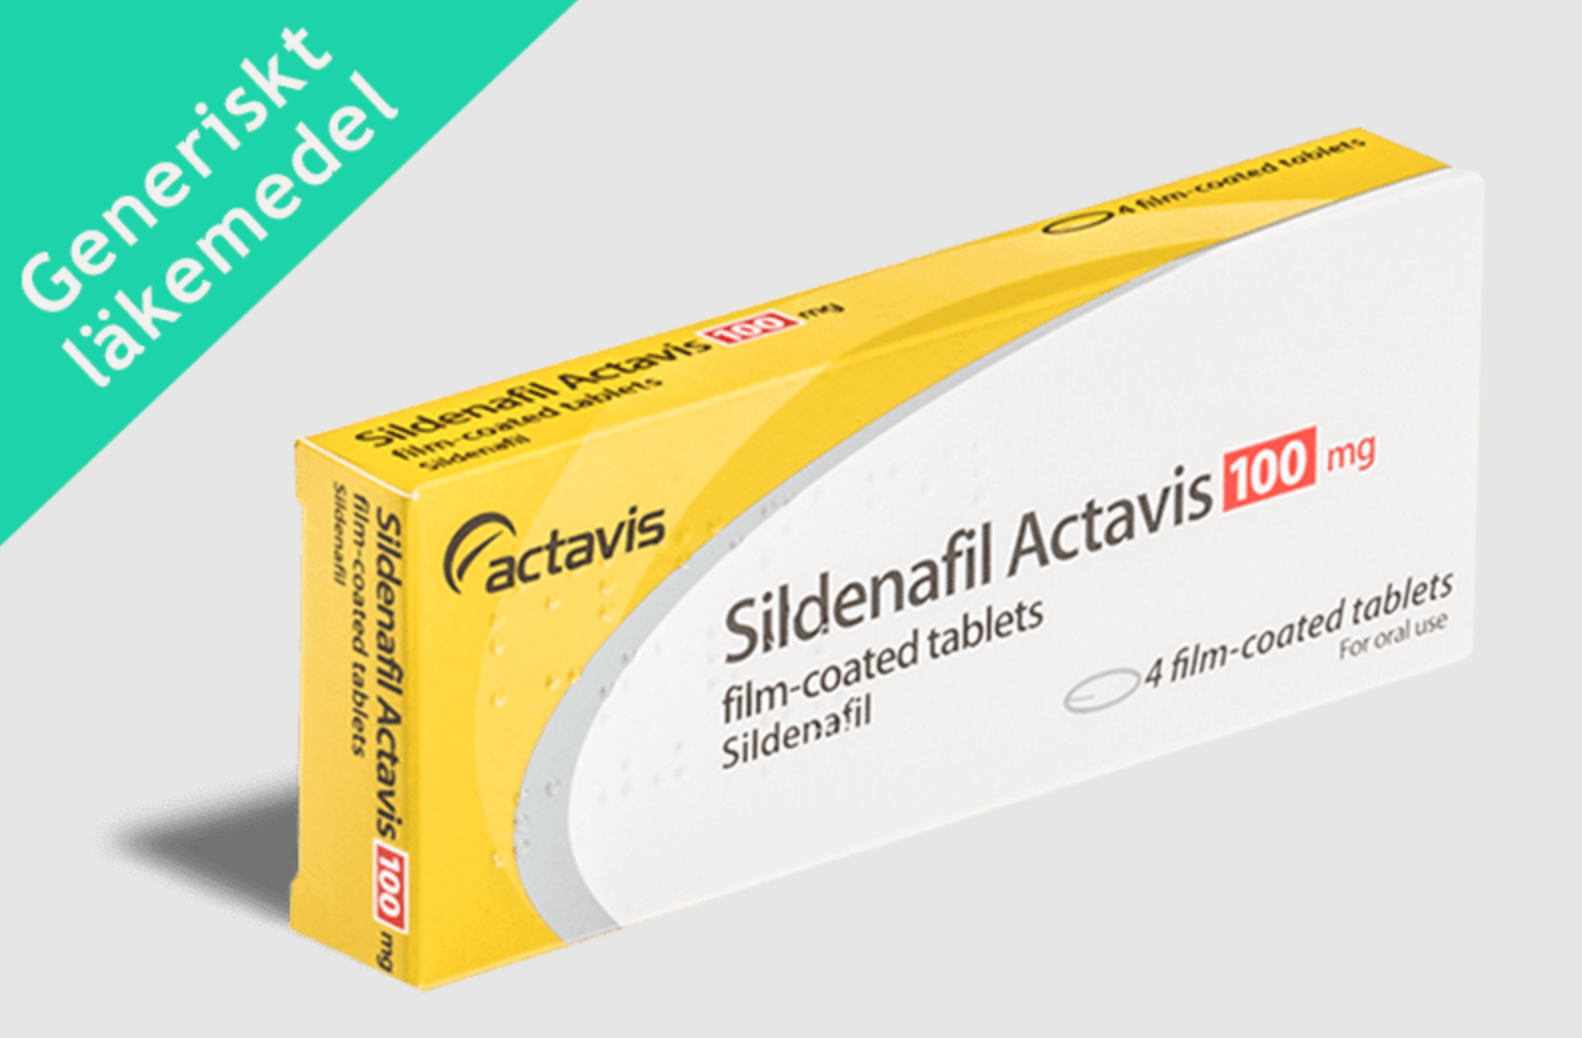 köpa sildenafil actavis 100 mg pris